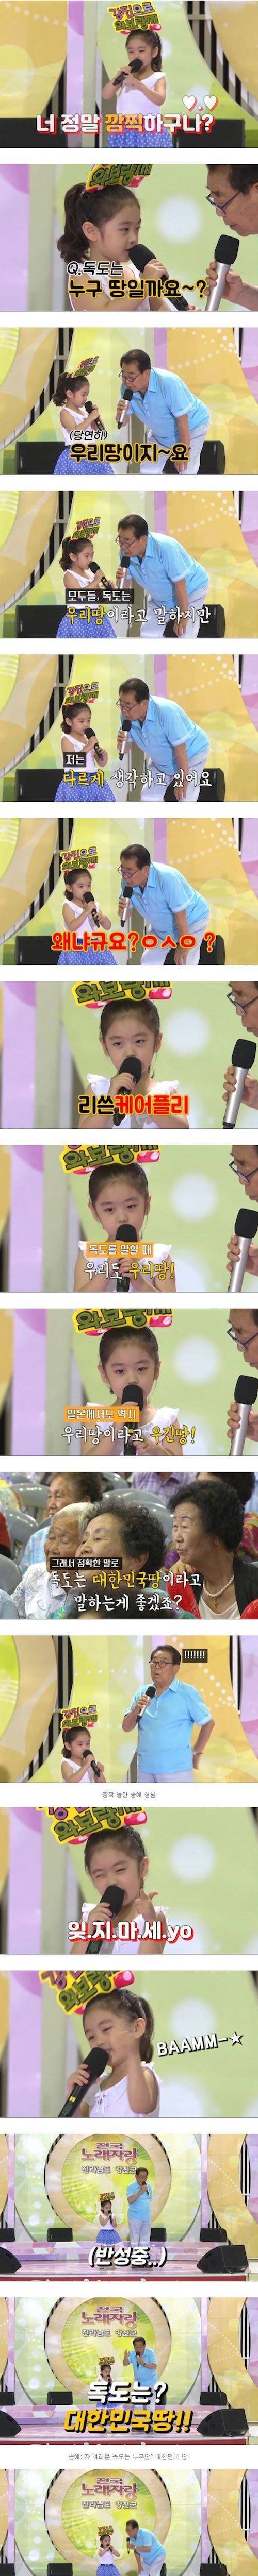 [스압] 전국노래자랑 똘똘한 7살 소녀